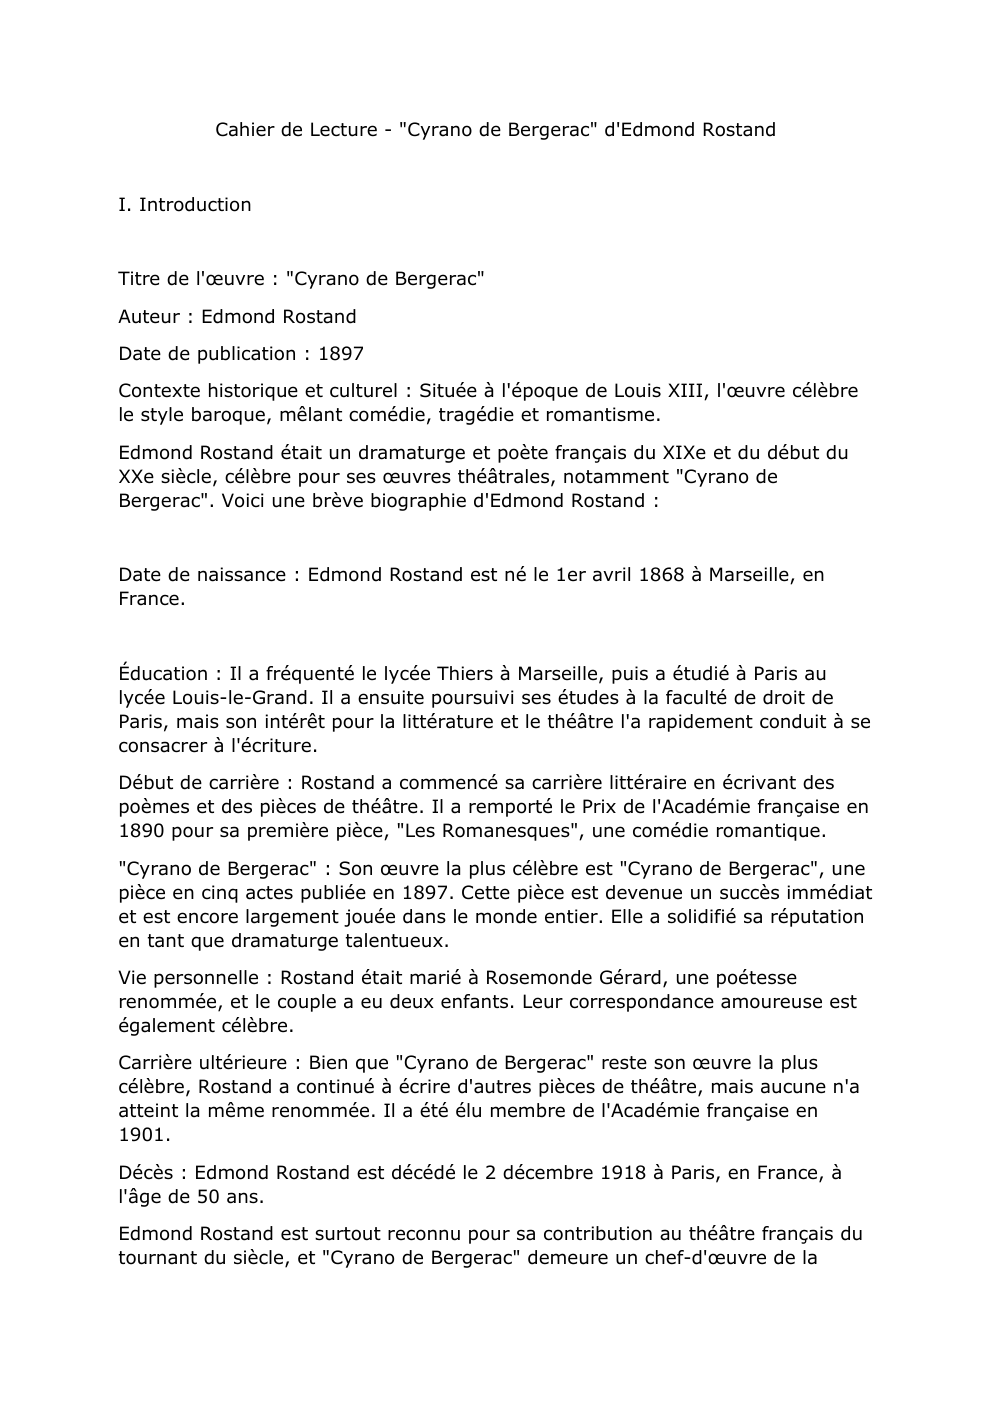 Prévisualisation du document Cahier de Lecture - "Cyrano de Bergerac" d'Edmond Rostand